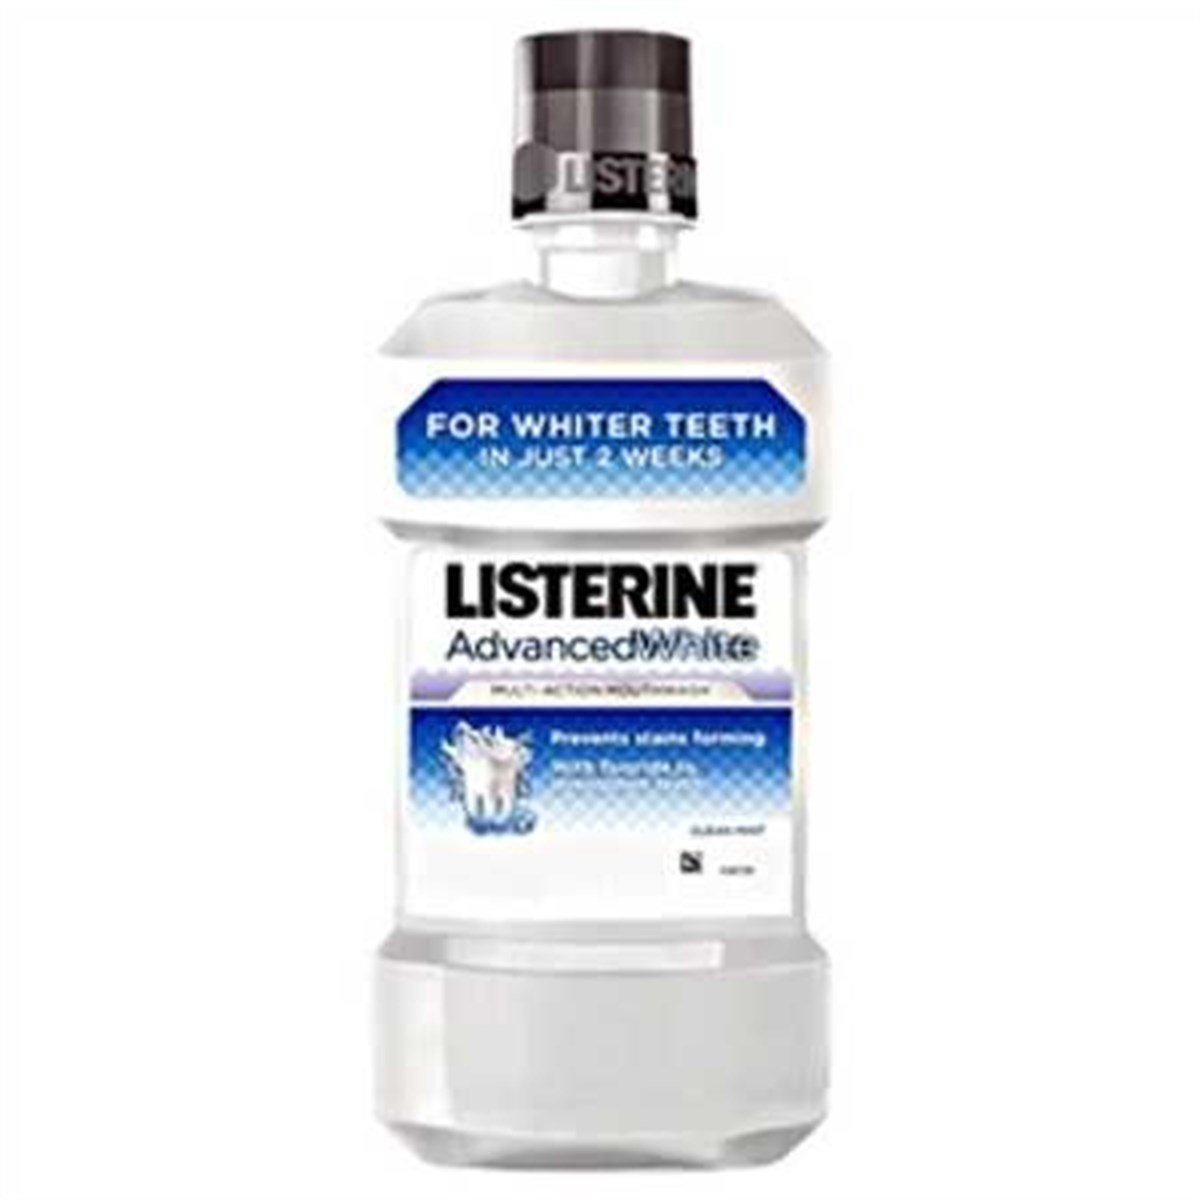 Listerine Advanced White Diş Beyazlatıcı Gargara 250ml Fiyatları |  Dermosiparis.com